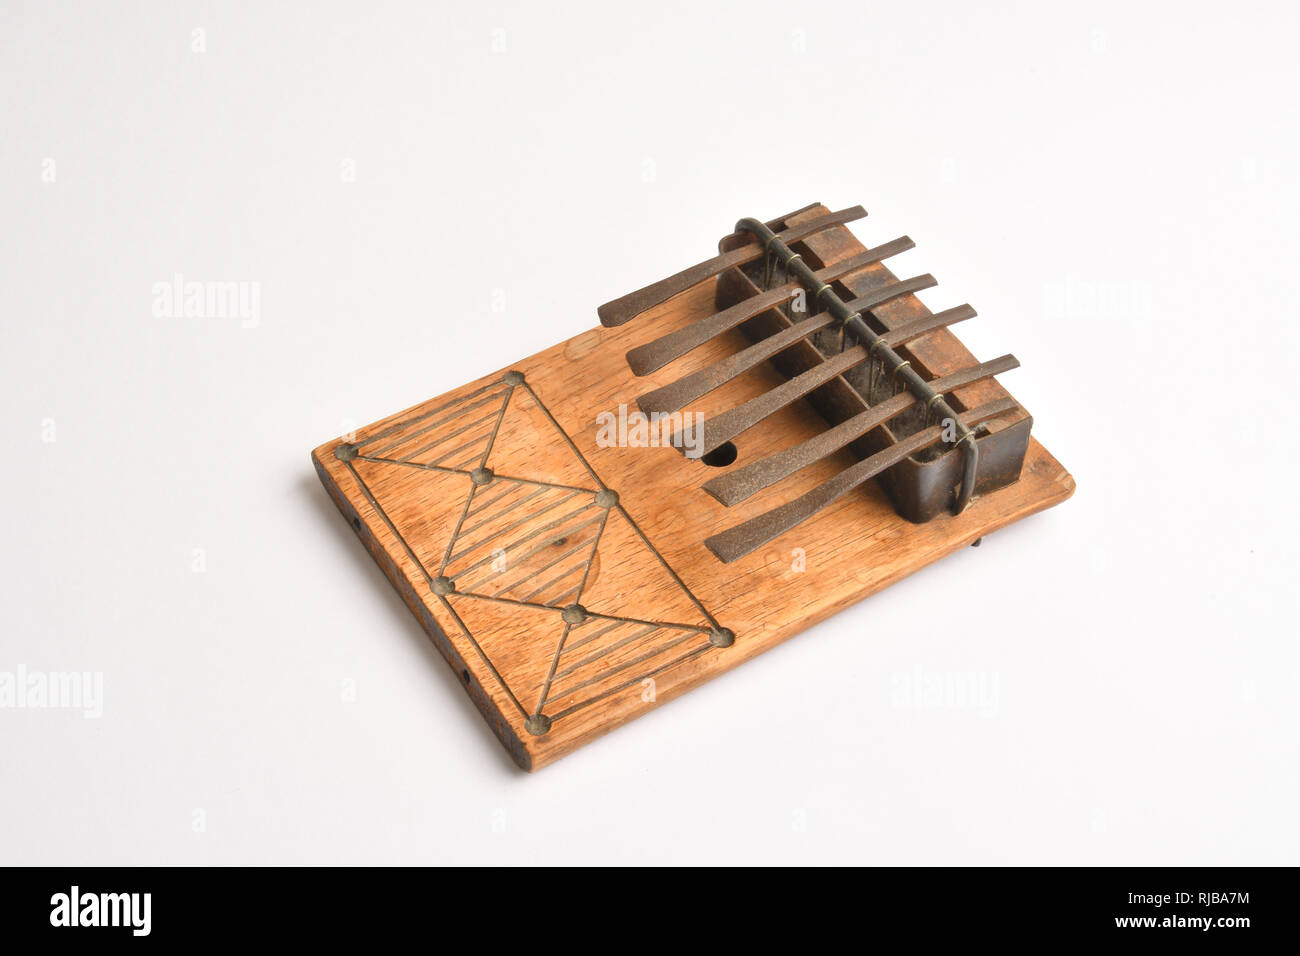 Piano à l'Afrique. Kalimba, mbira.La mbira est un instrument de musique composé d'une planche en bois avec des dents métalliques décalés. Banque D'Images